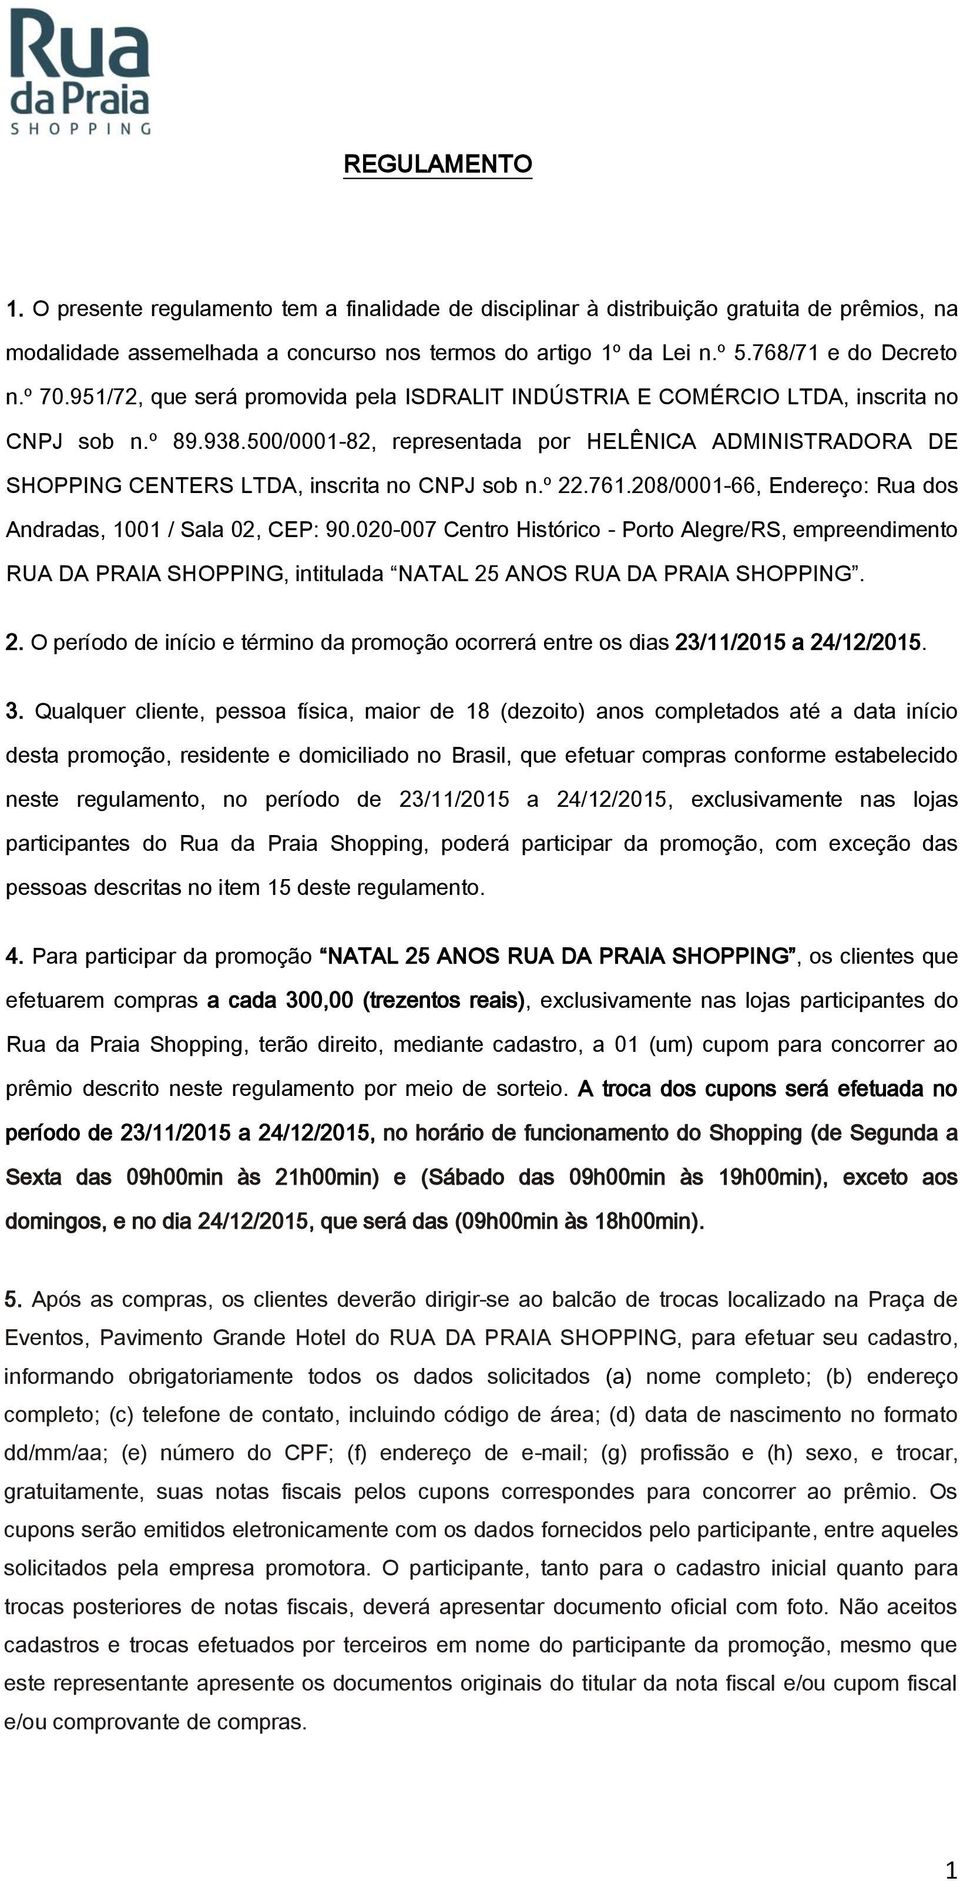 500/0001-82, representada por HELÊNICA ADMINISTRADORA DE SHOPPING CENTERS LTDA, inscrita no CNPJ sob n.º 22.761.208/0001-66, Endereço: Rua dos Andradas, 1001 / Sala 02, CEP: 90.